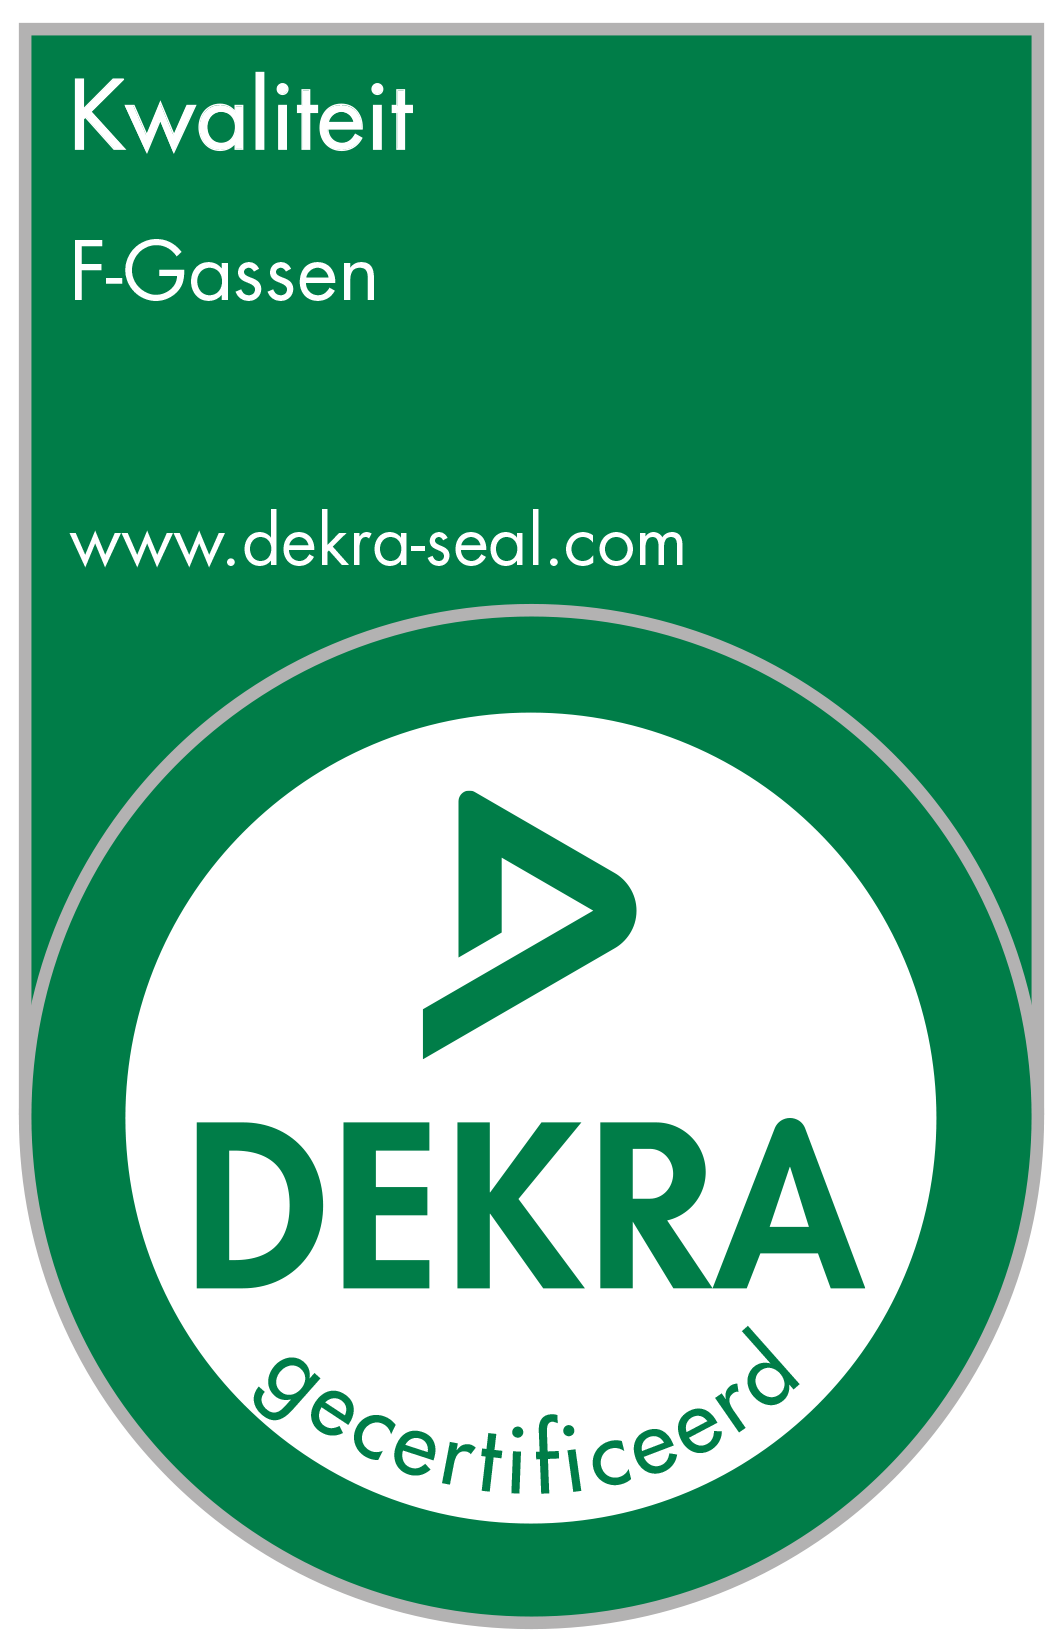 F-gassen certificaat Dekra Seal